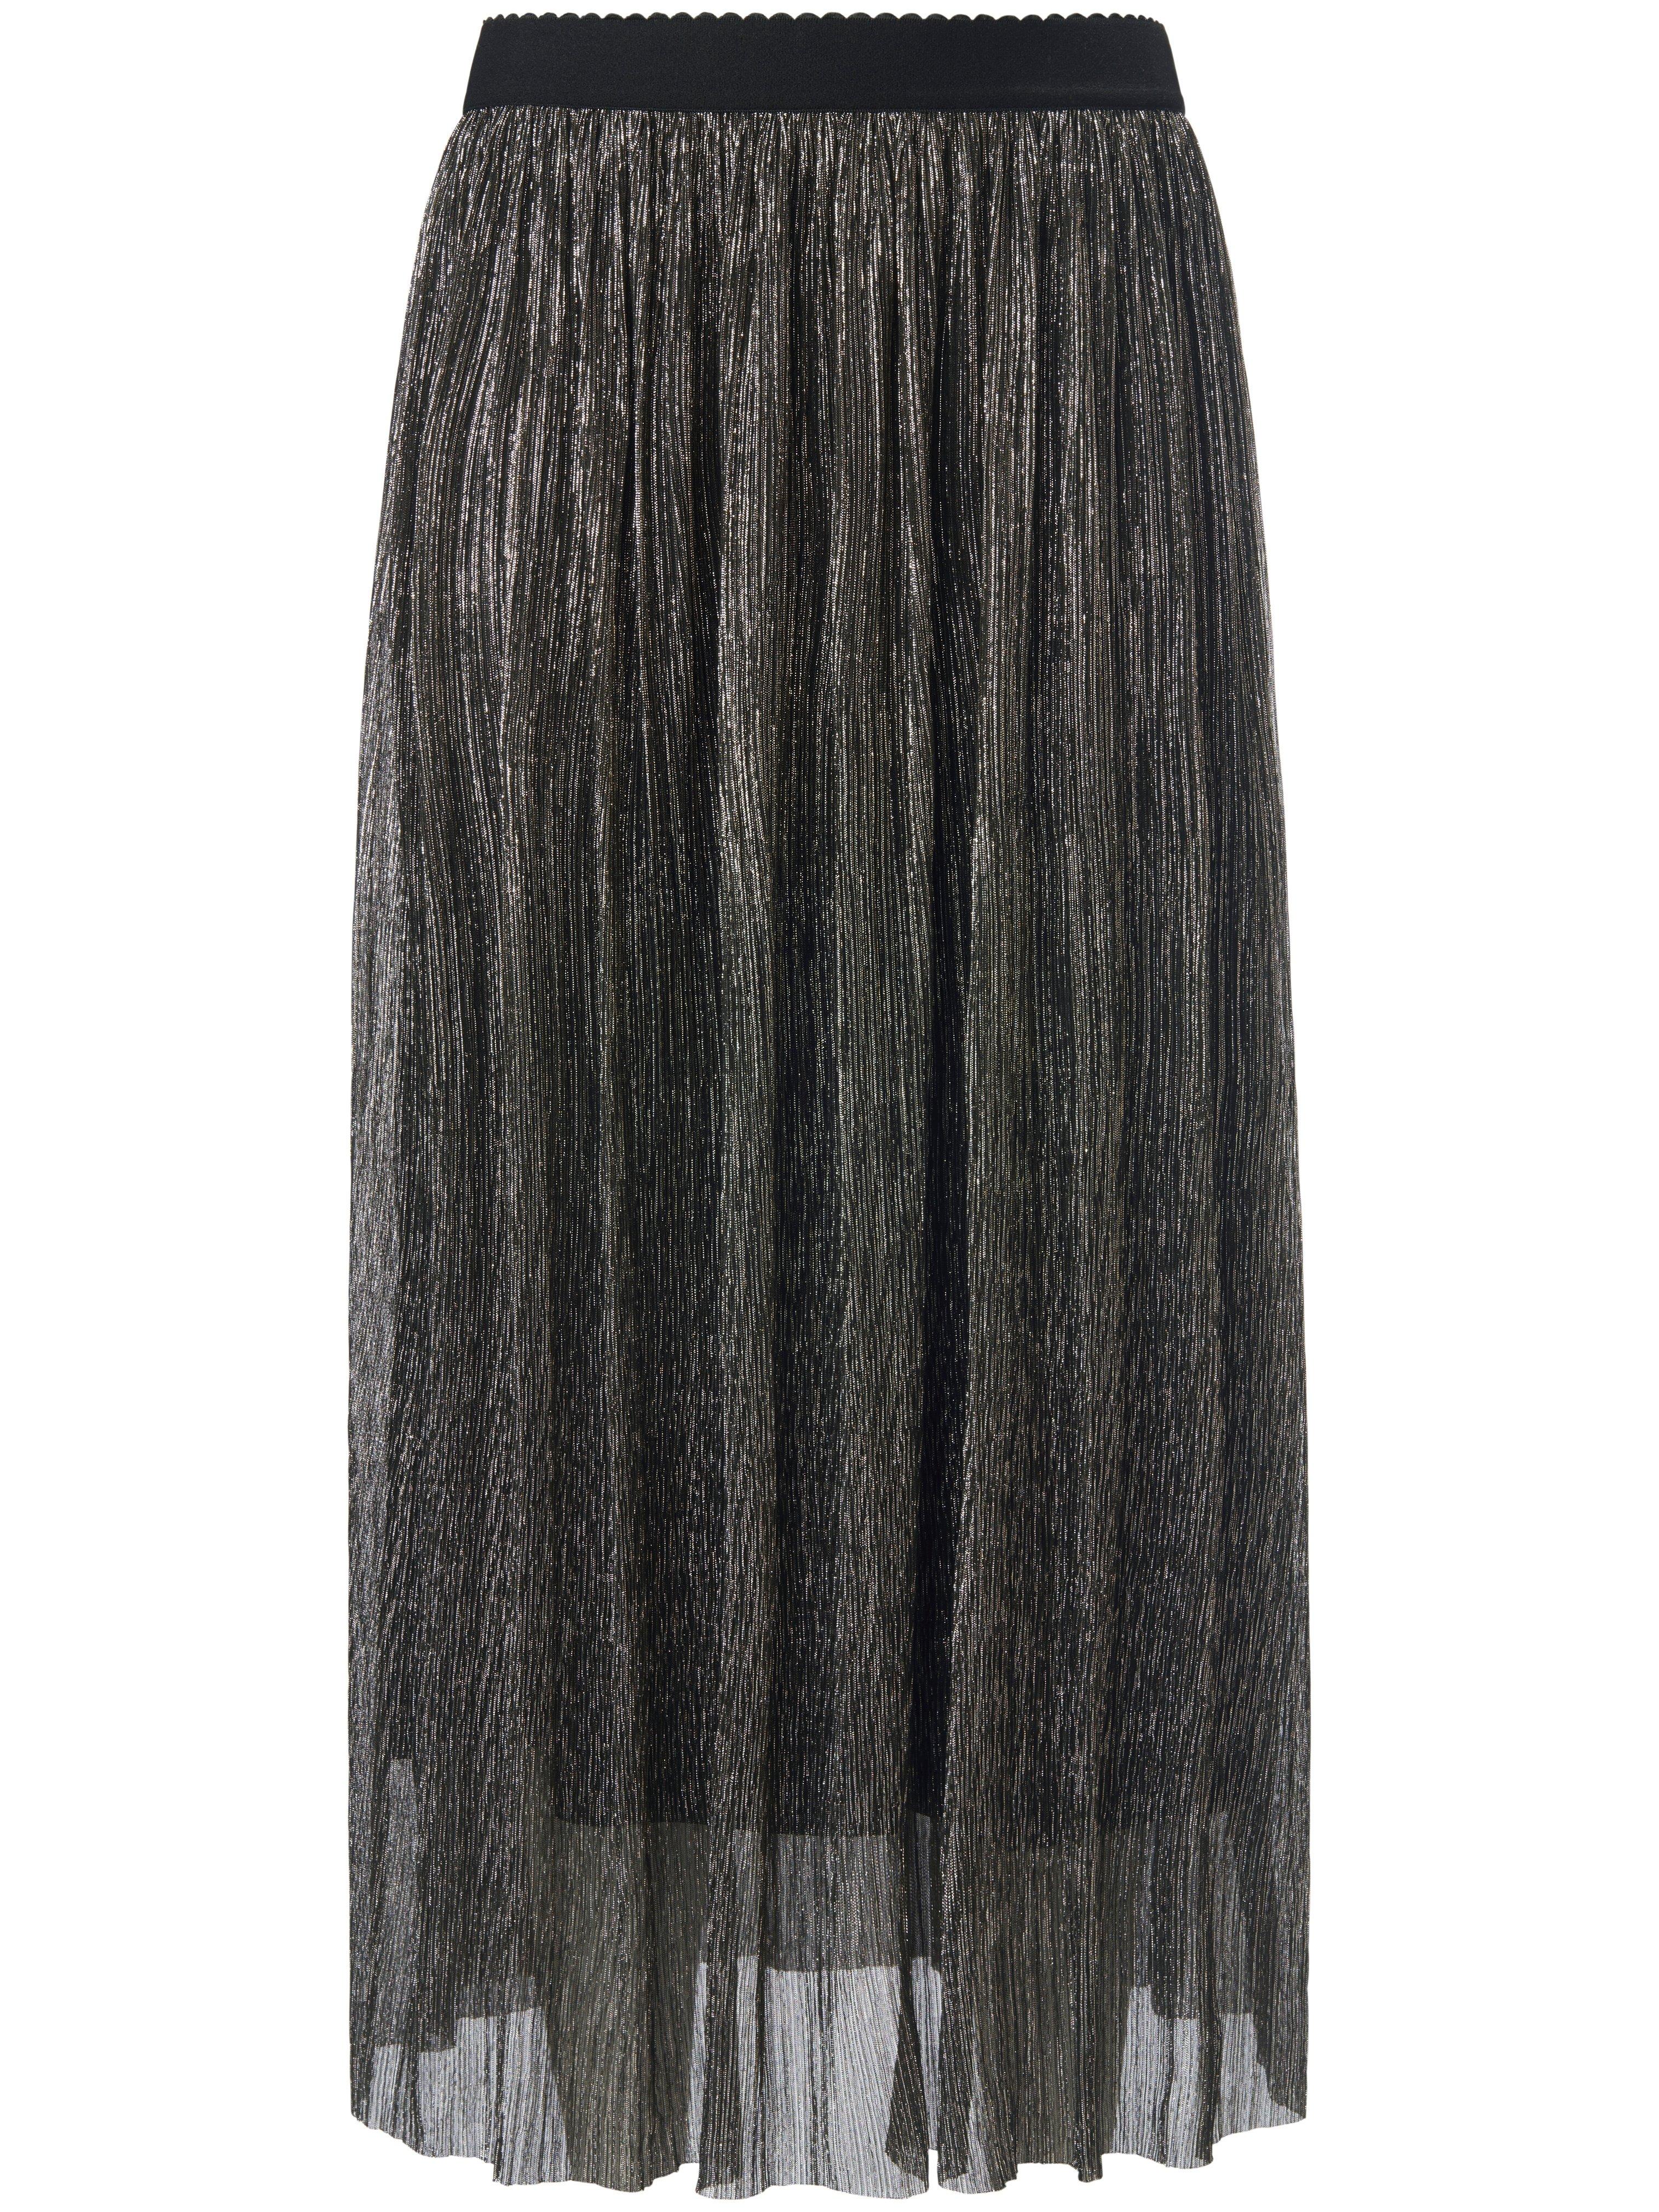 La jupe plissée avec taille élastiquée  Uta Raasch couleur argent